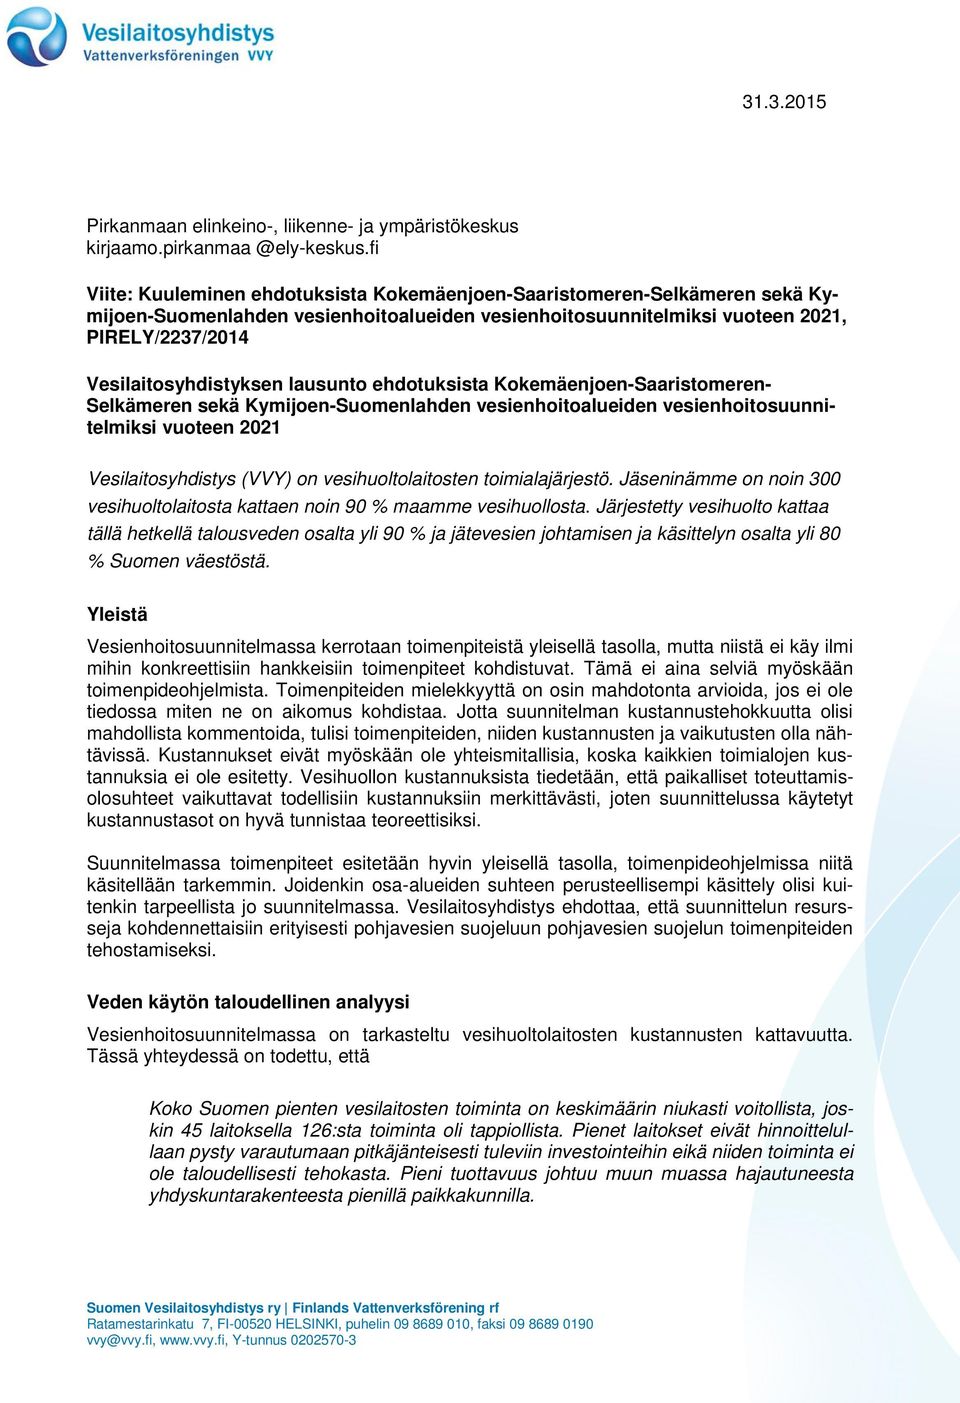 lausunto ehdotuksista Kokemäenjoen-Saaristomeren- Selkämeren sekä Kymijoen-Suomenlahden vesienhoitoalueiden vesienhoitosuunnitelmiksi vuoteen 2021 Vesilaitosyhdistys (VVY) on vesihuoltolaitosten